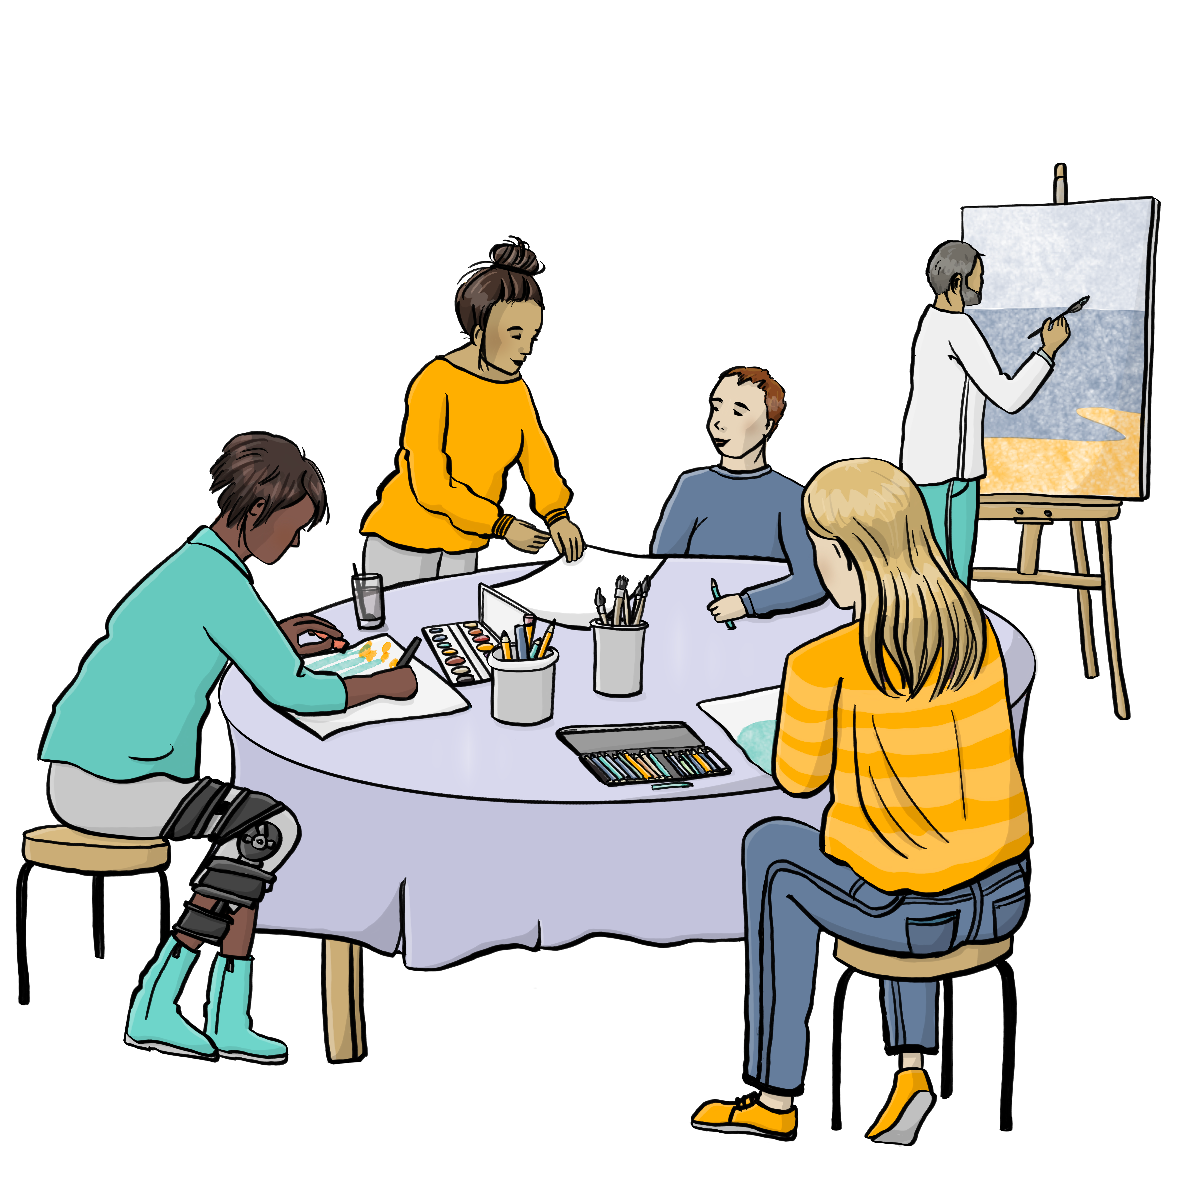 Menschen mit verschiedenen Hautfarben sitzen an einem Tisch und malen. Es sind Menschen mit und ohne Behinderung. Auf dem Tisch sind Blätter, Stifte, Pinsel und Farben. Im Hintergrund steht ein Mann an einer Staffelei. 